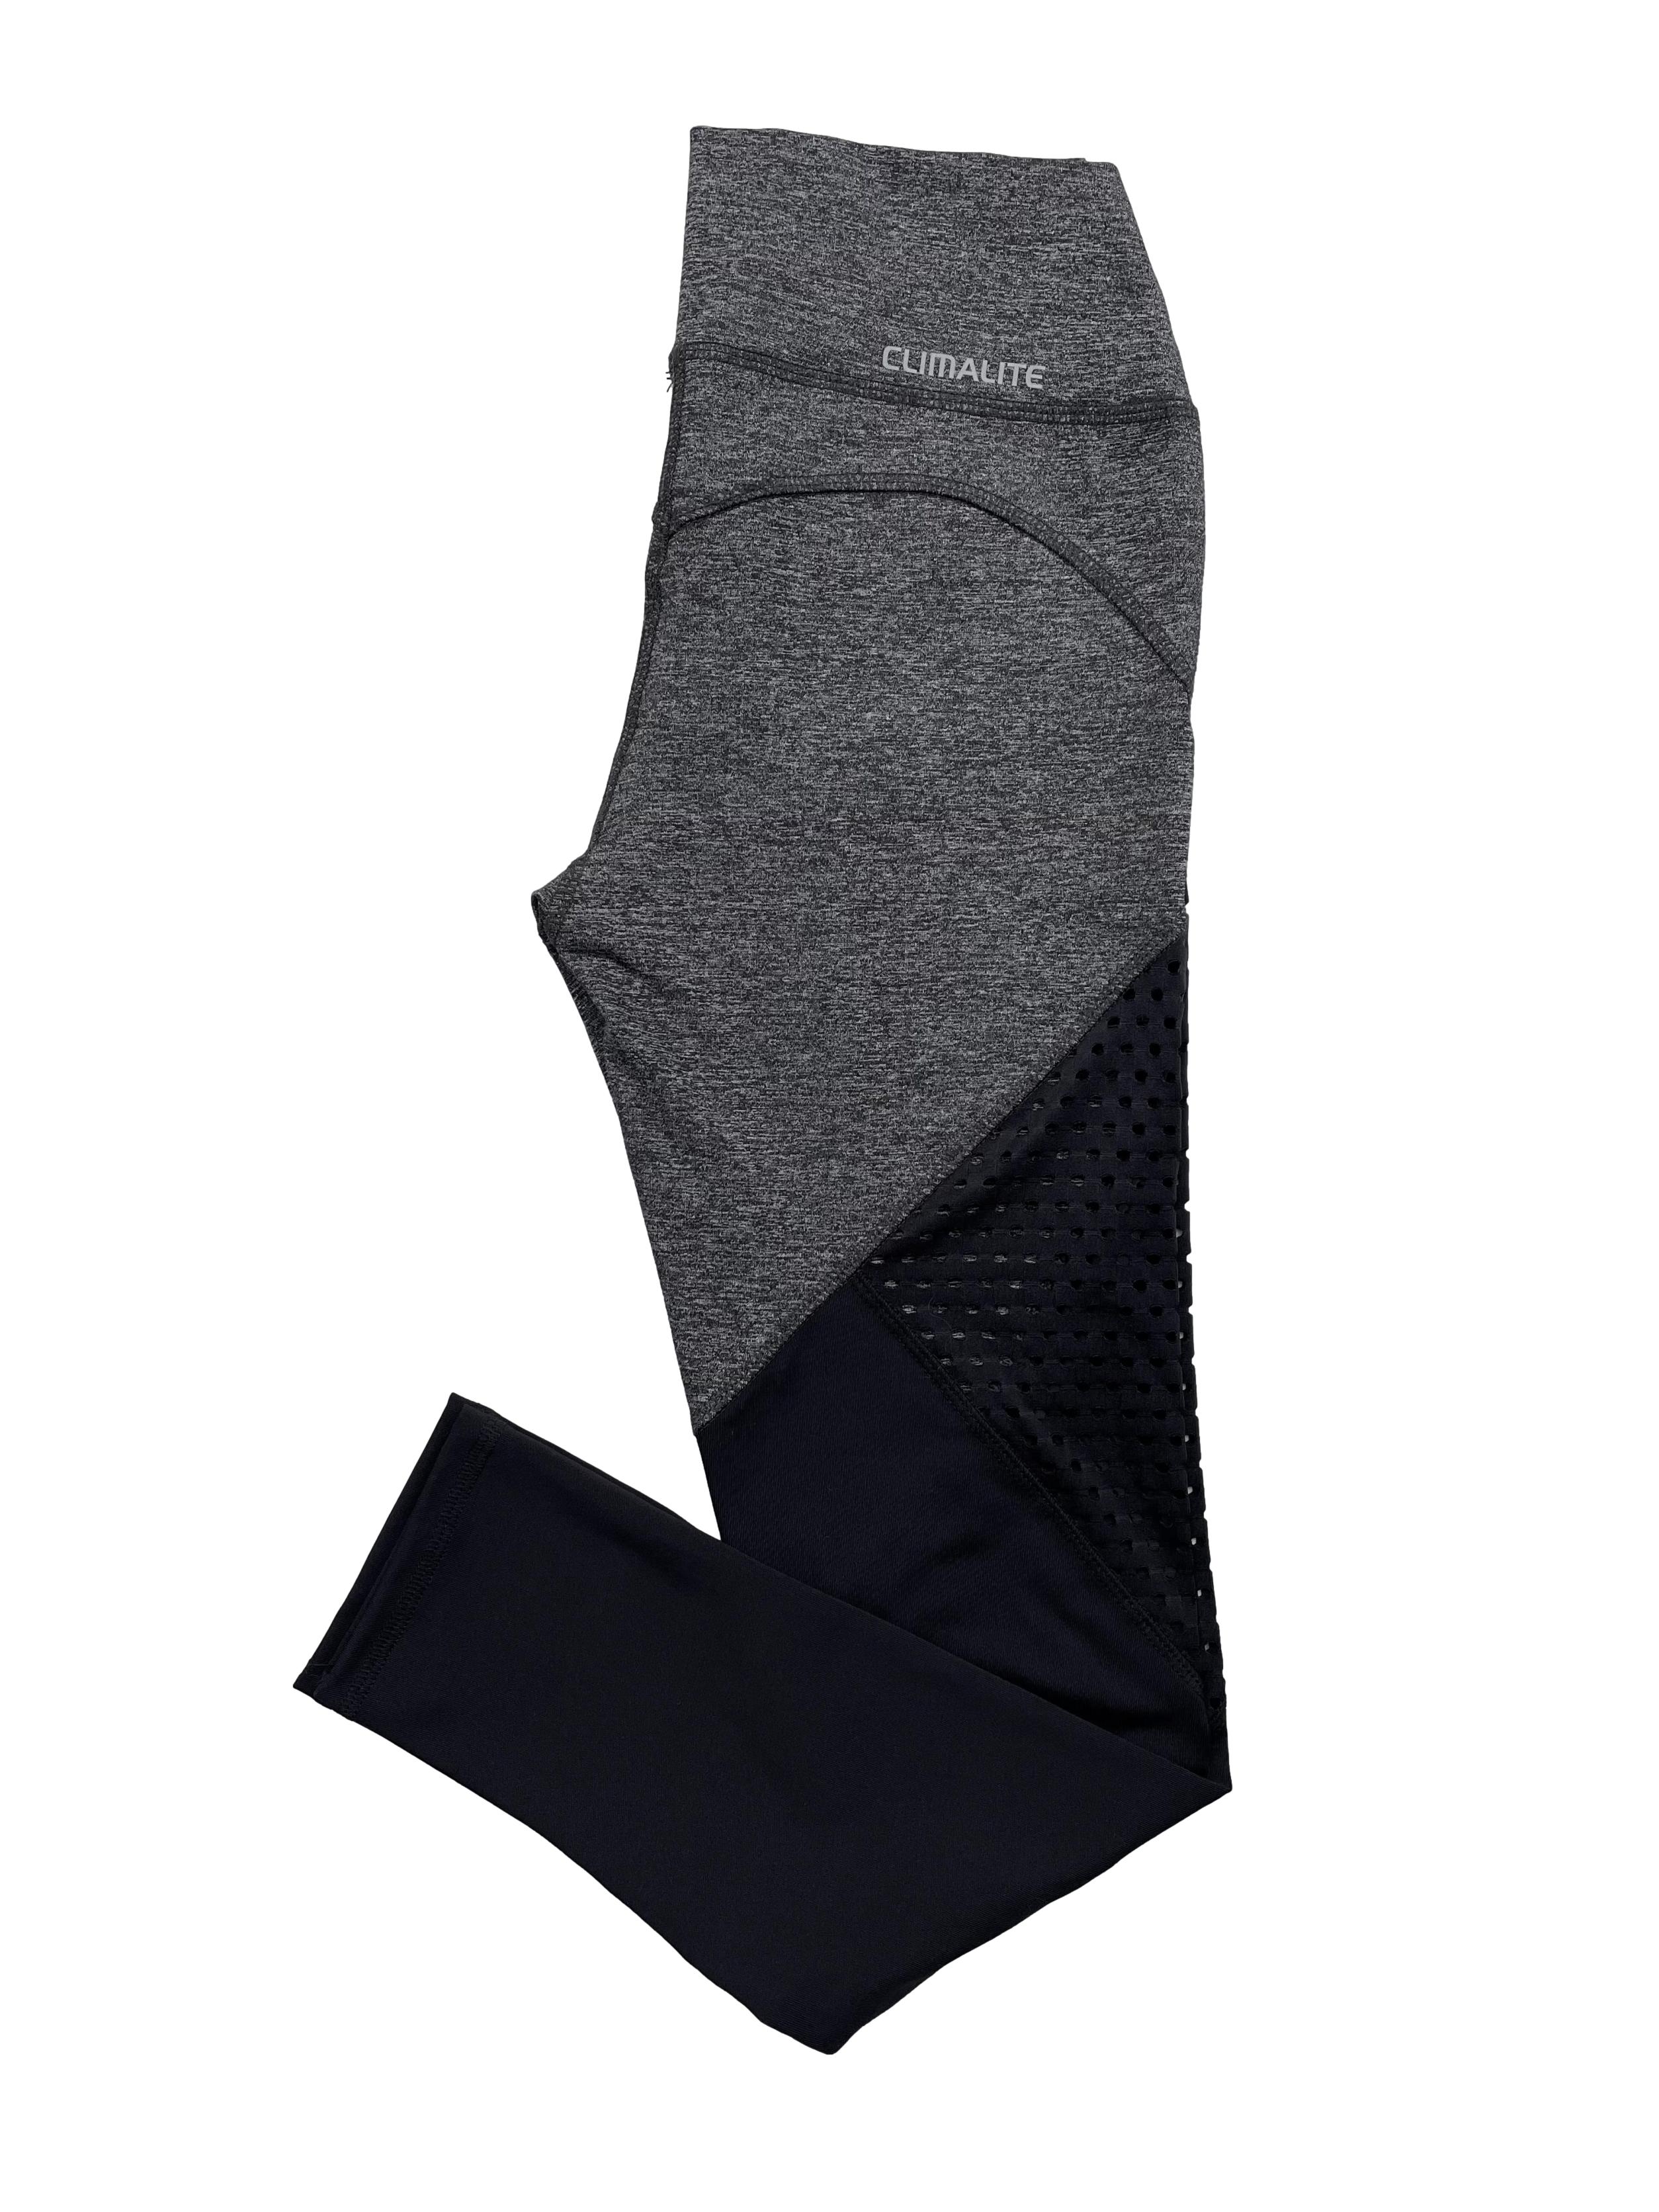 Leggings Adidas Climacool, color gris jaspeado, tiro alto con paneles de malla en la parte inferior de la pierna. Cintura 62cm-sin estirar, Largo 88cm.